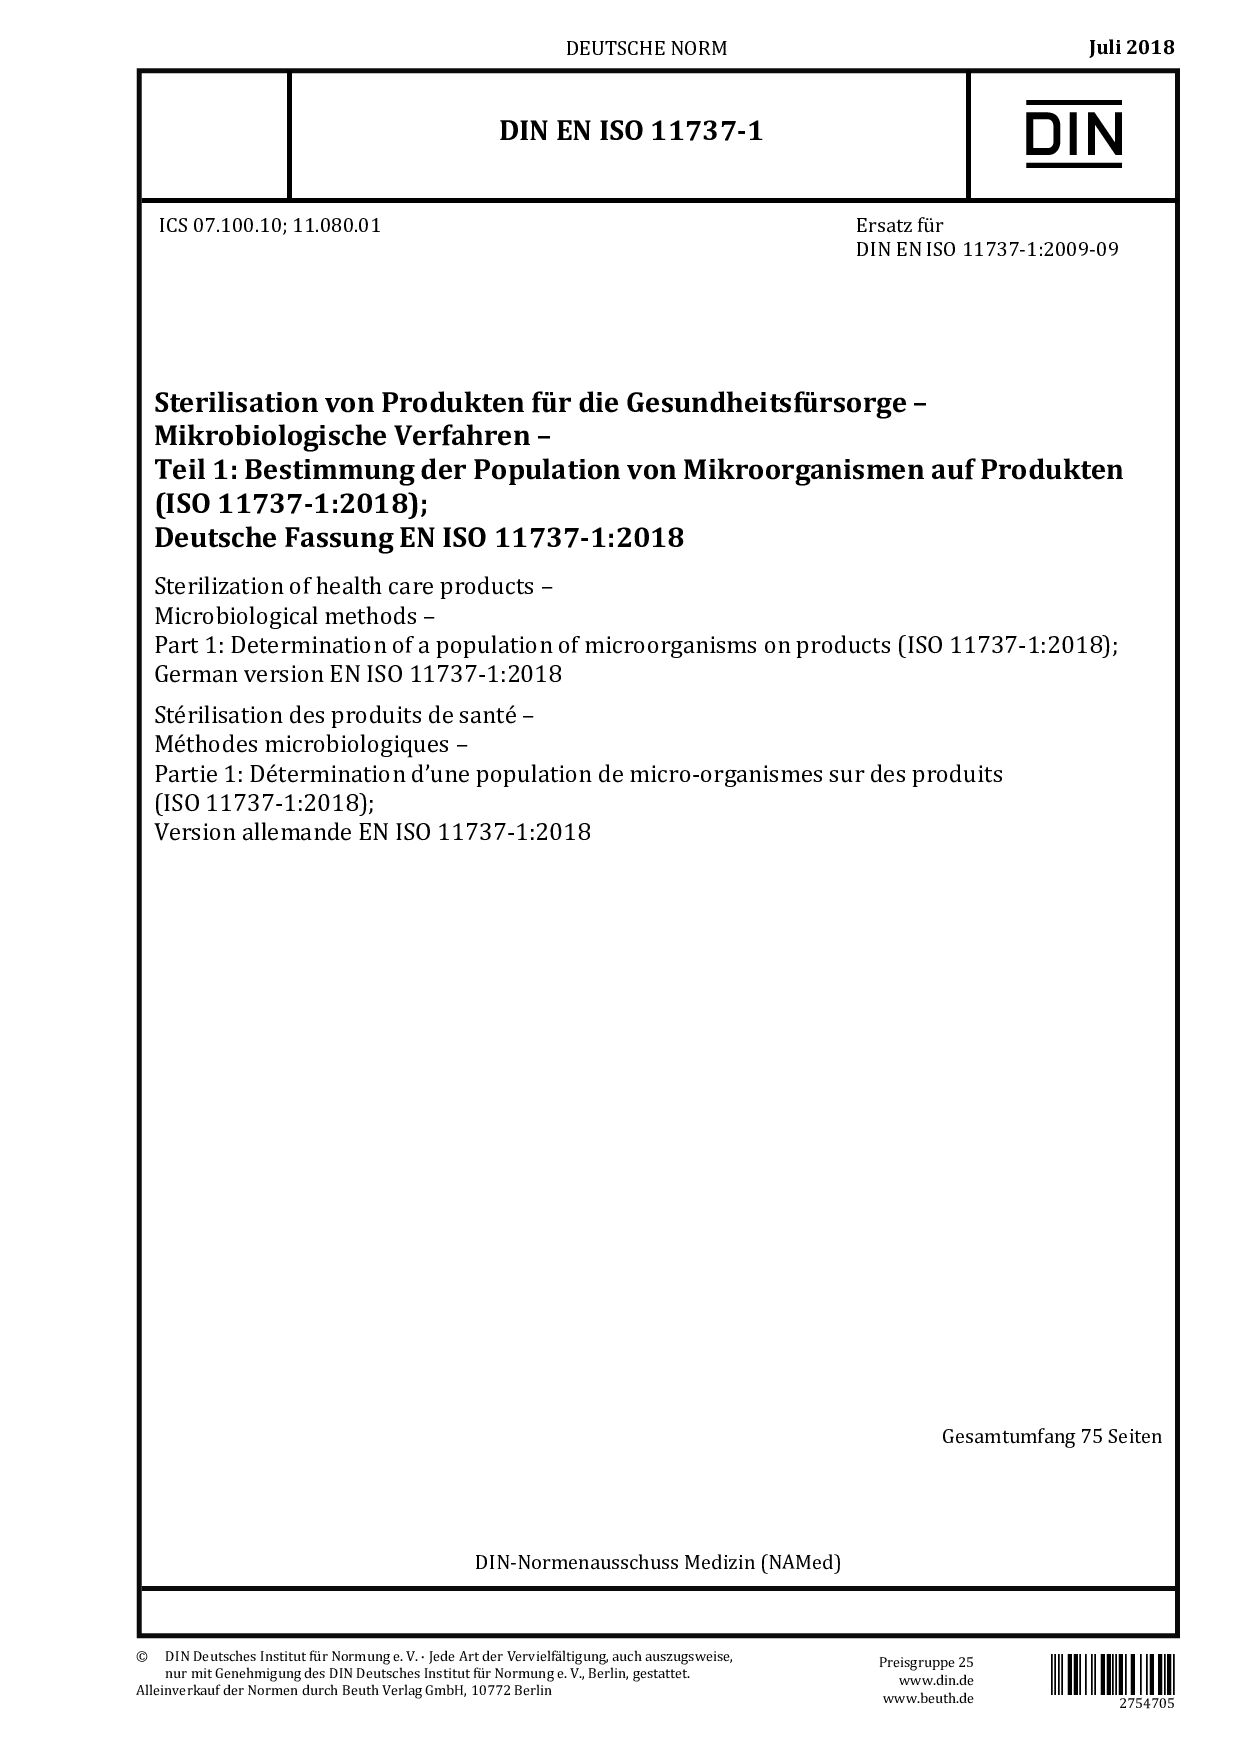 DIN EN ISO 11737-1:2018封面图